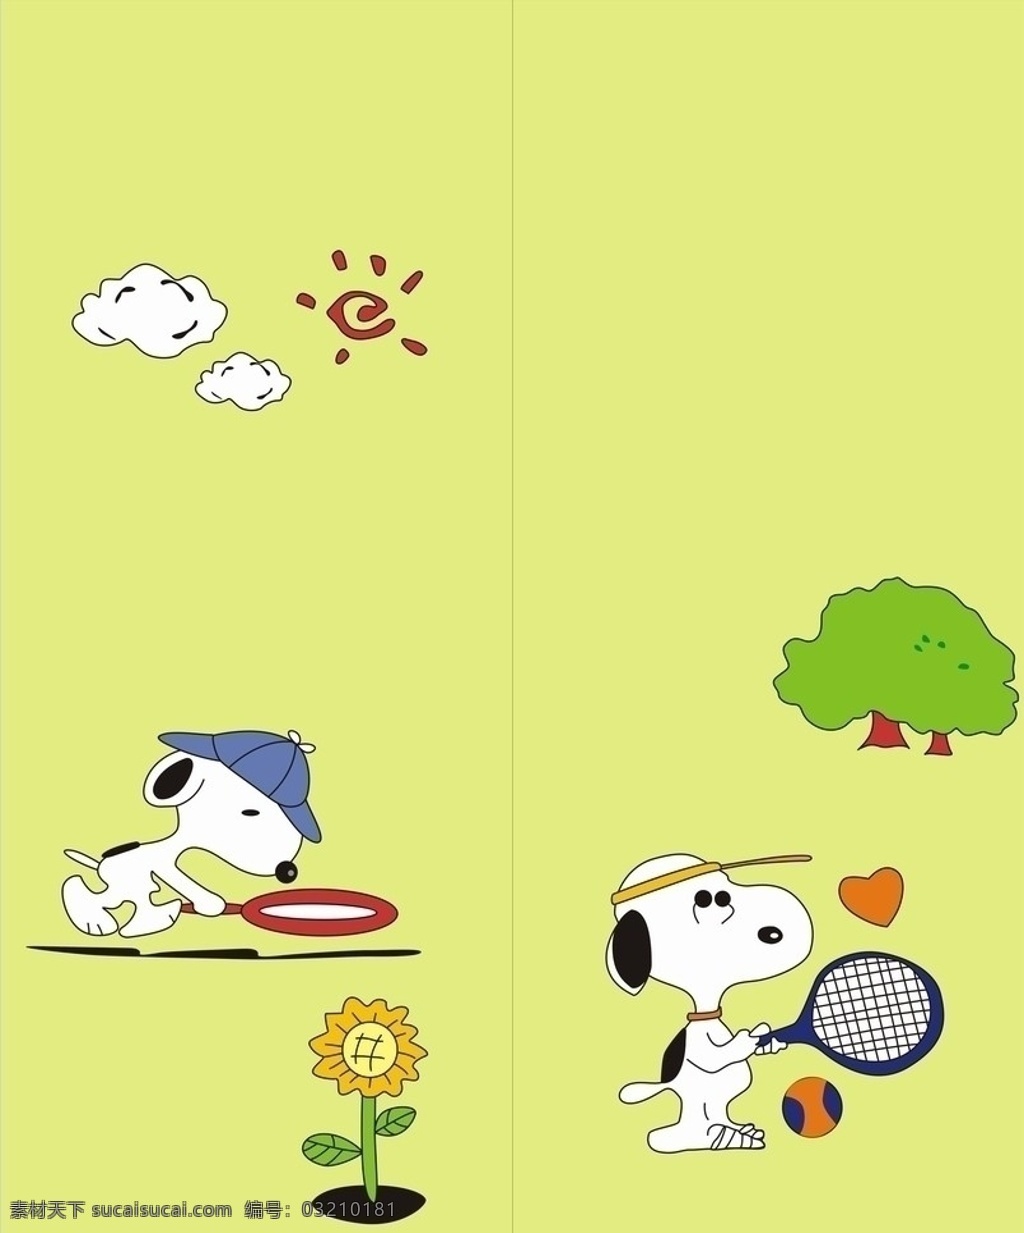 史努比 移门图片 打网球 打球 太阳 白云 云彩 大树 太阳花 卡通系列 移门图案 矢量